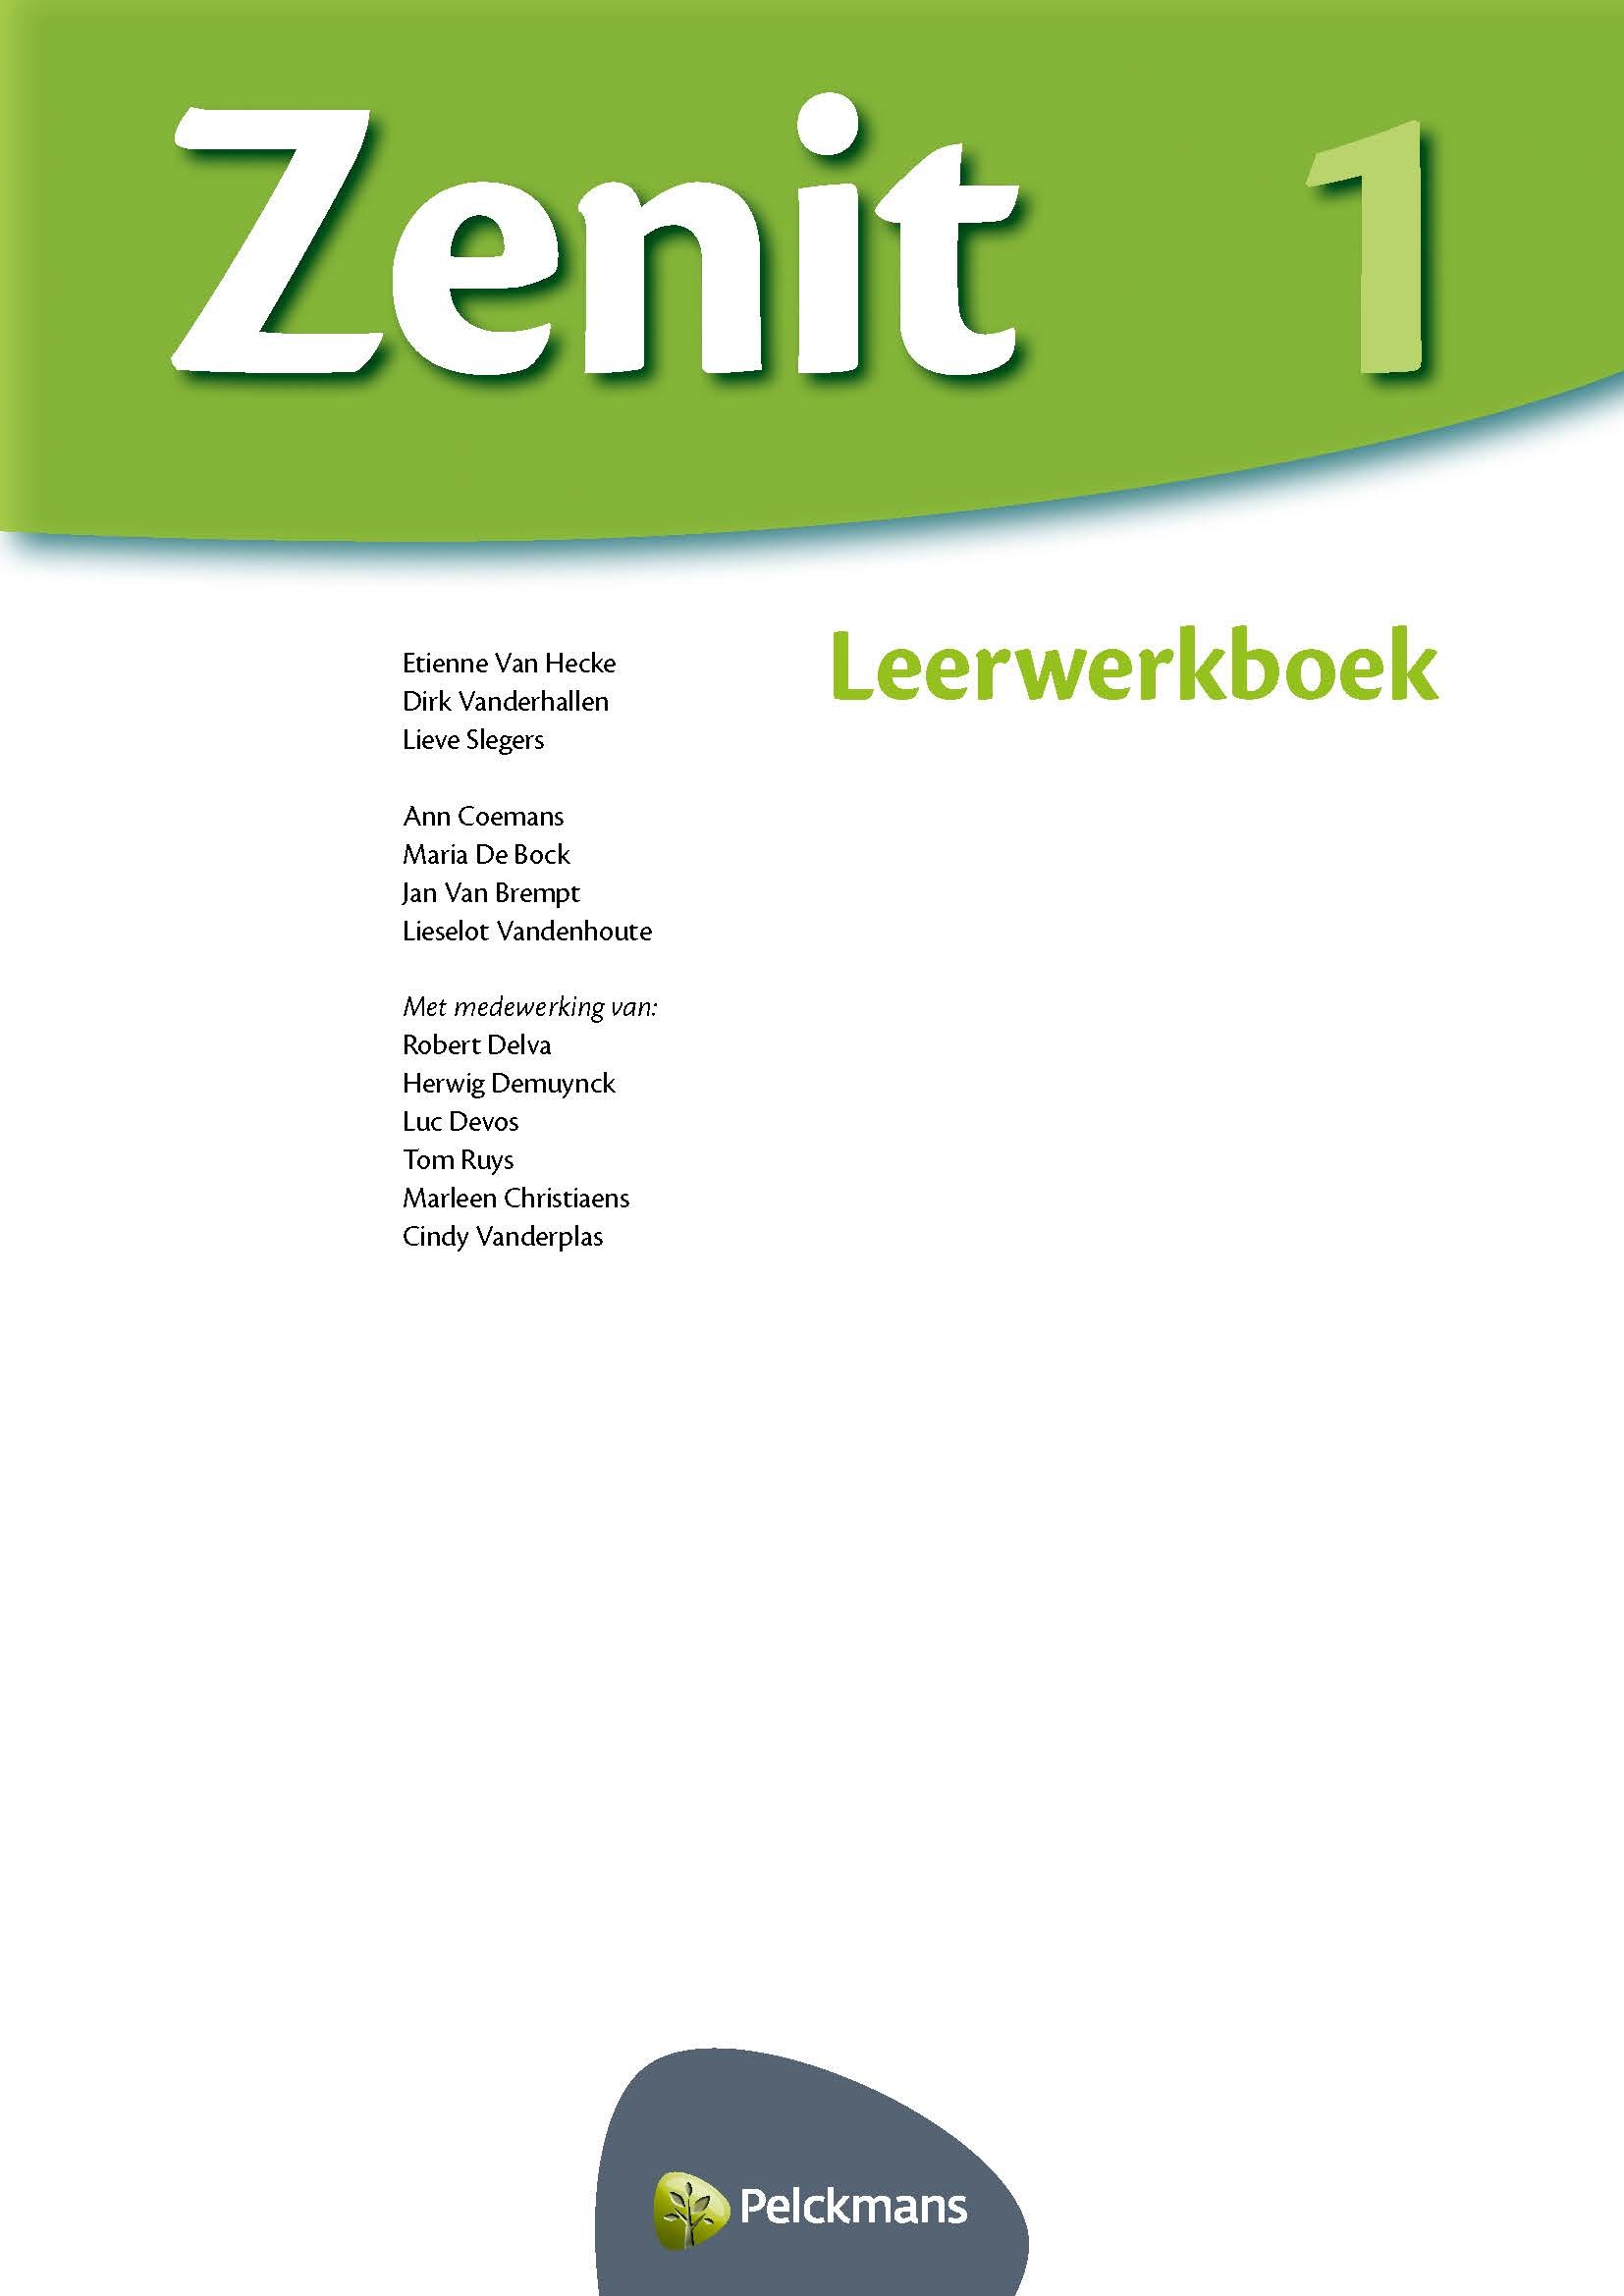 Zenit 1 leerwerkboek (2016)